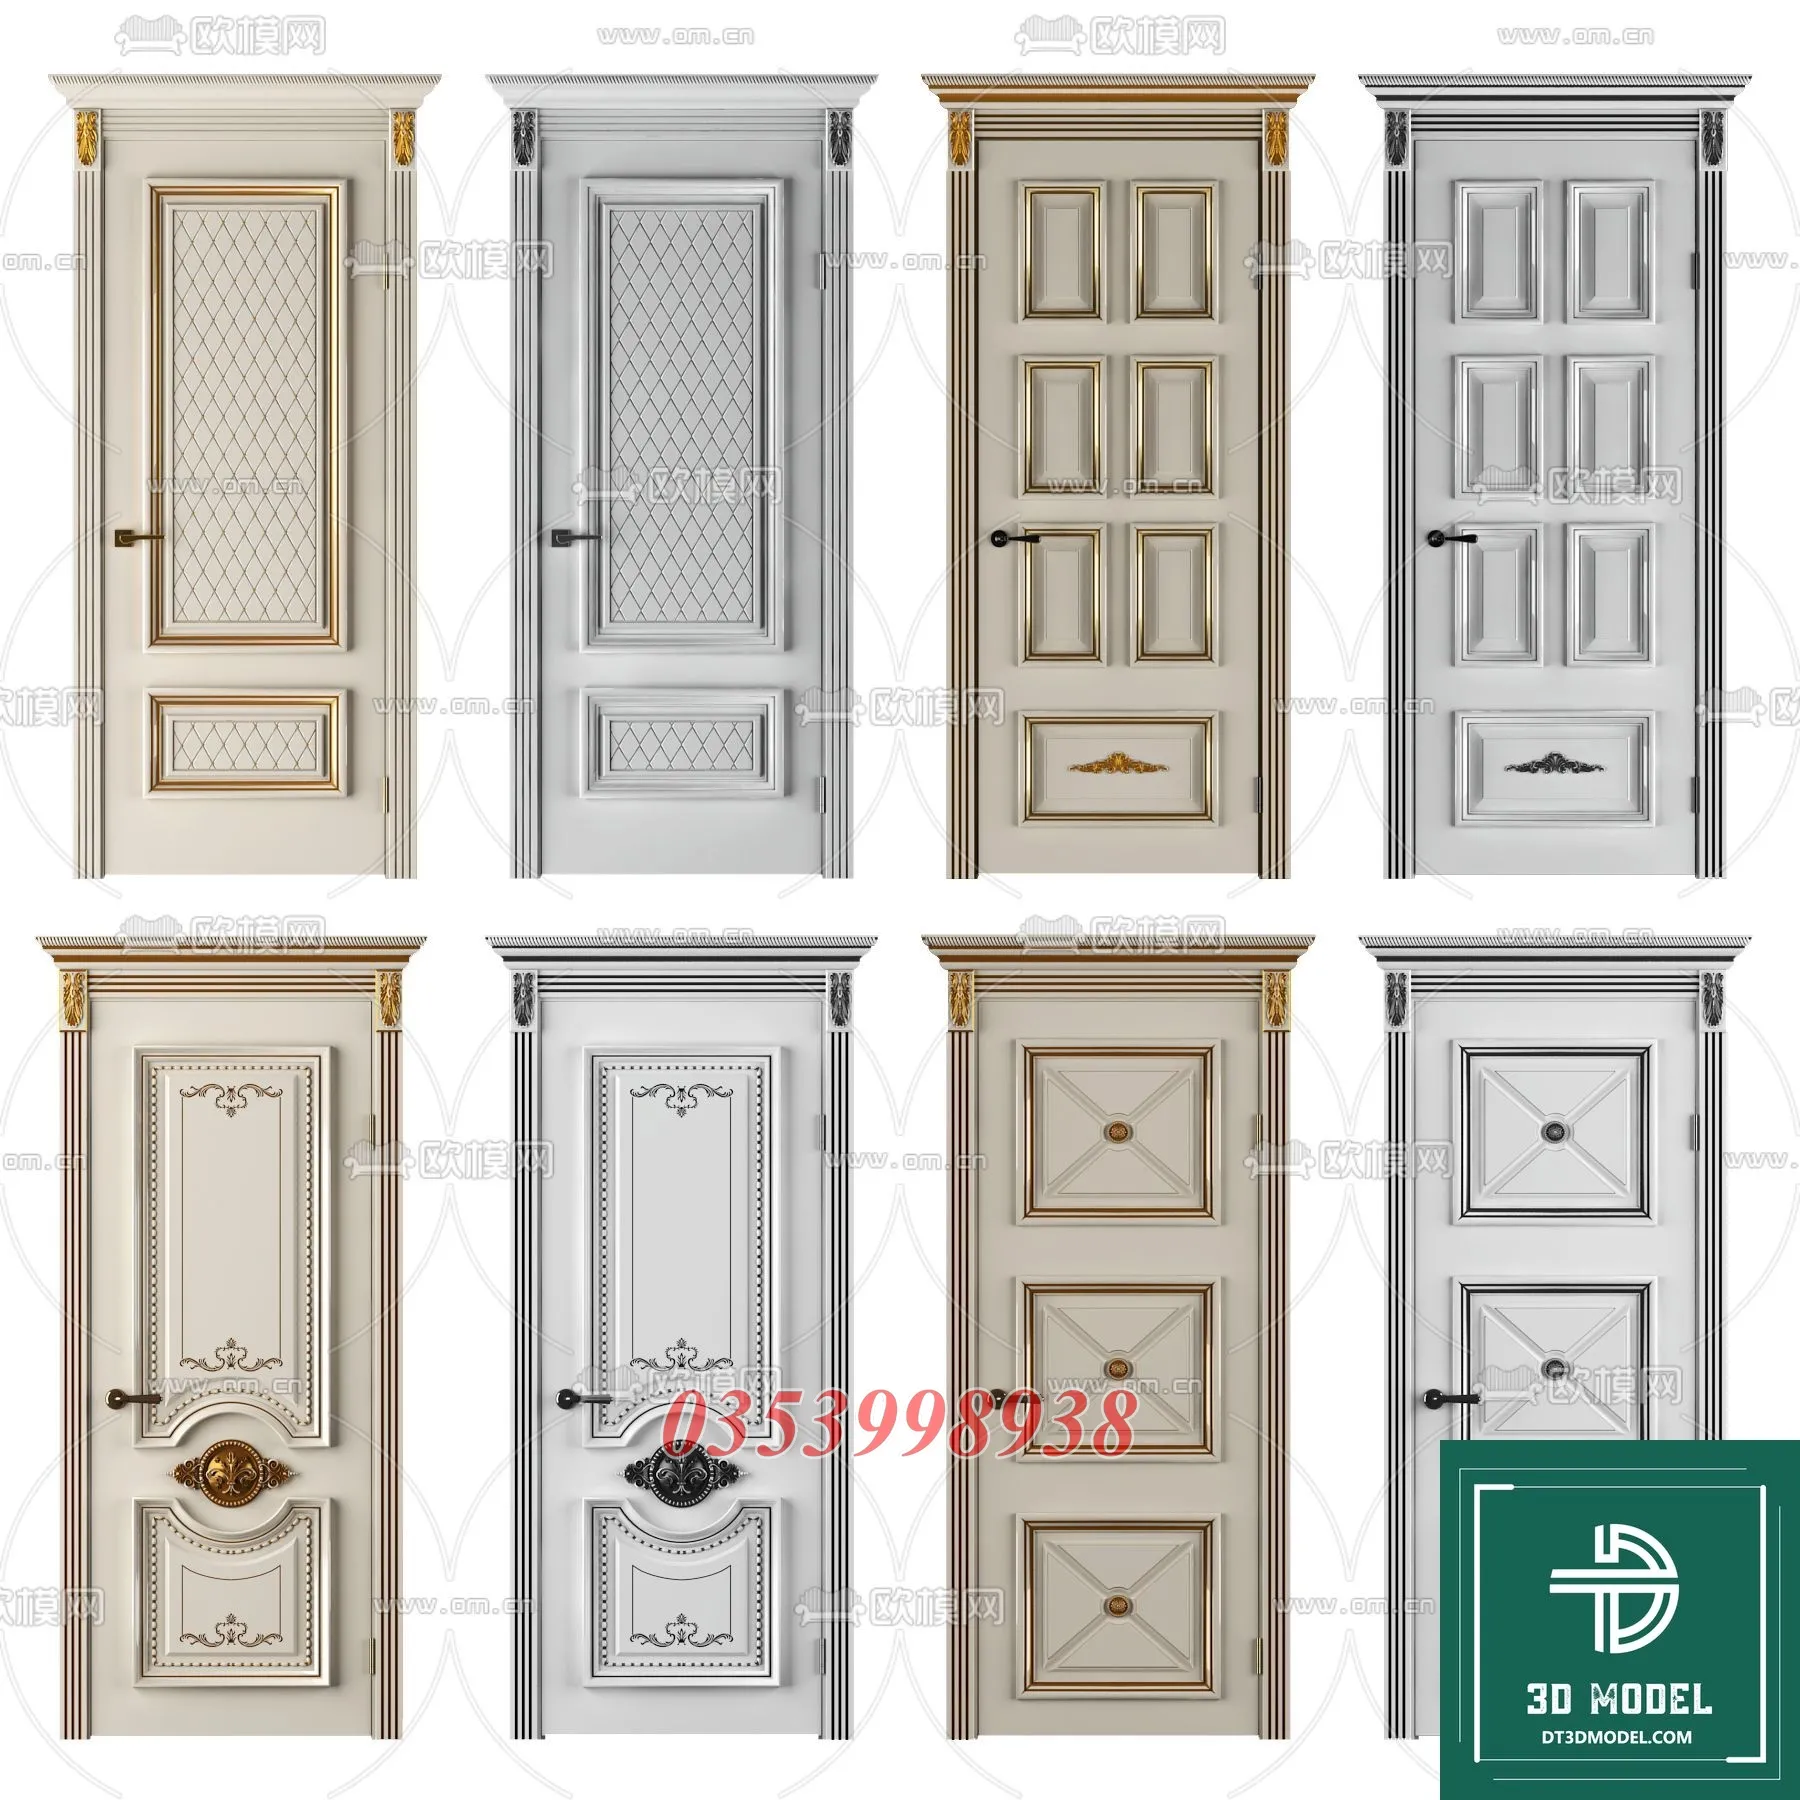 CLASSIC DOOR – 3dsmax MODELS – 079